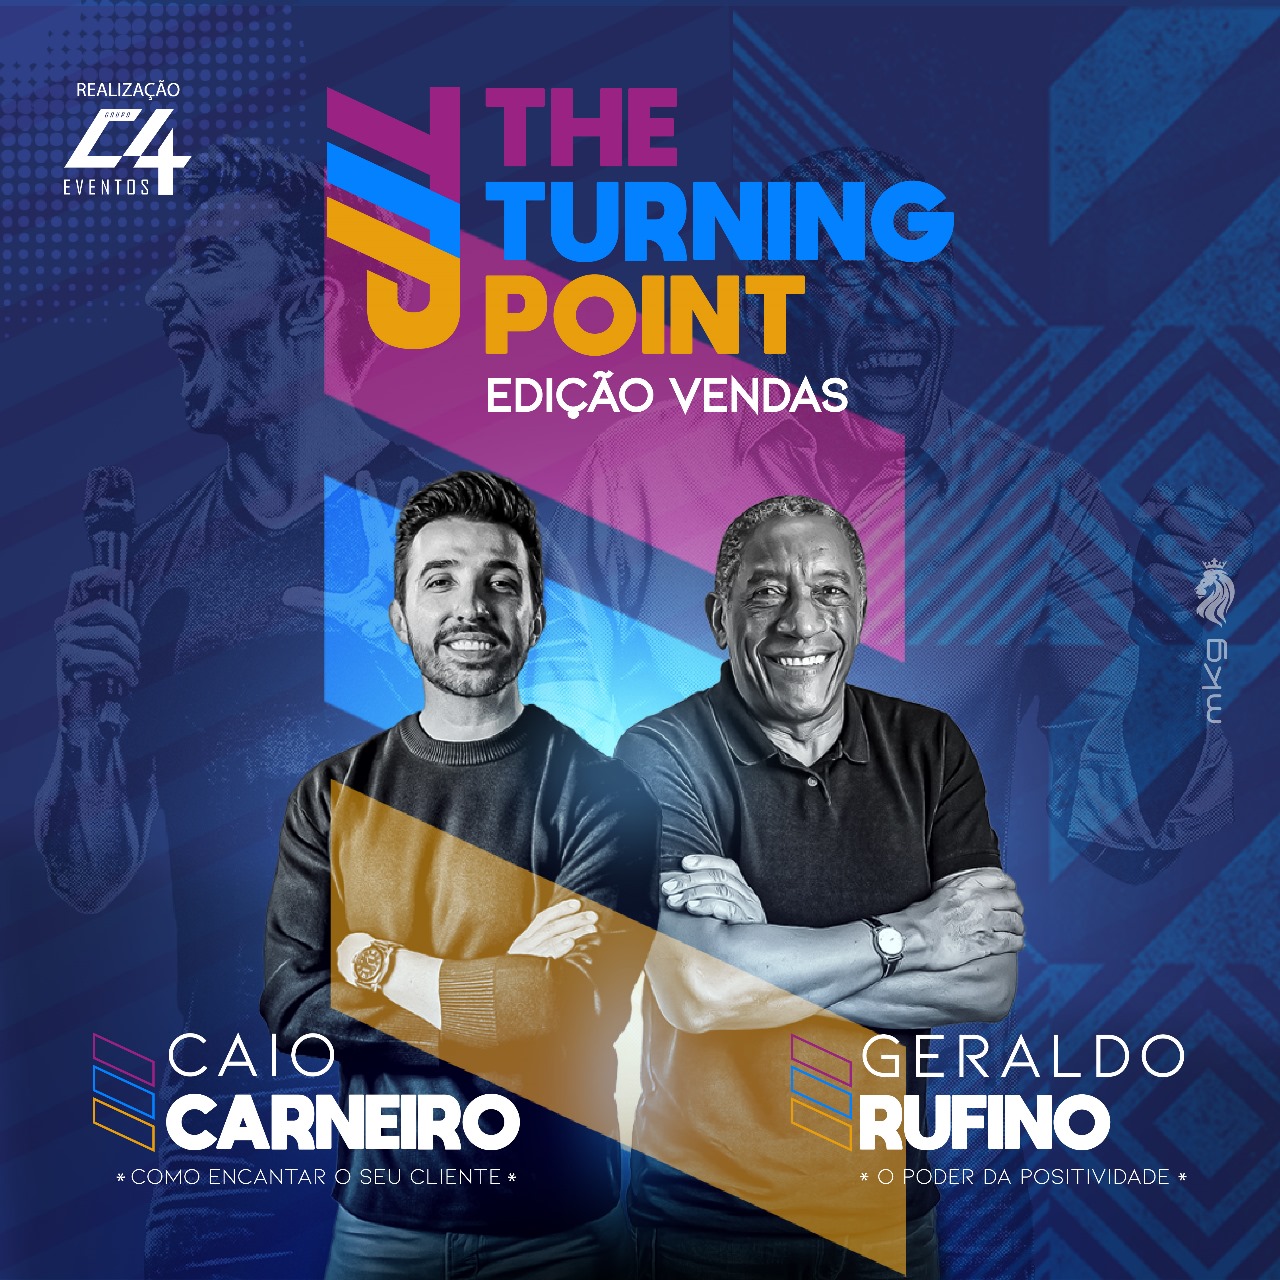 Caio Carneiro e Geraldo Rufino estão na segunda edição do “The Turning Point” em Barretos